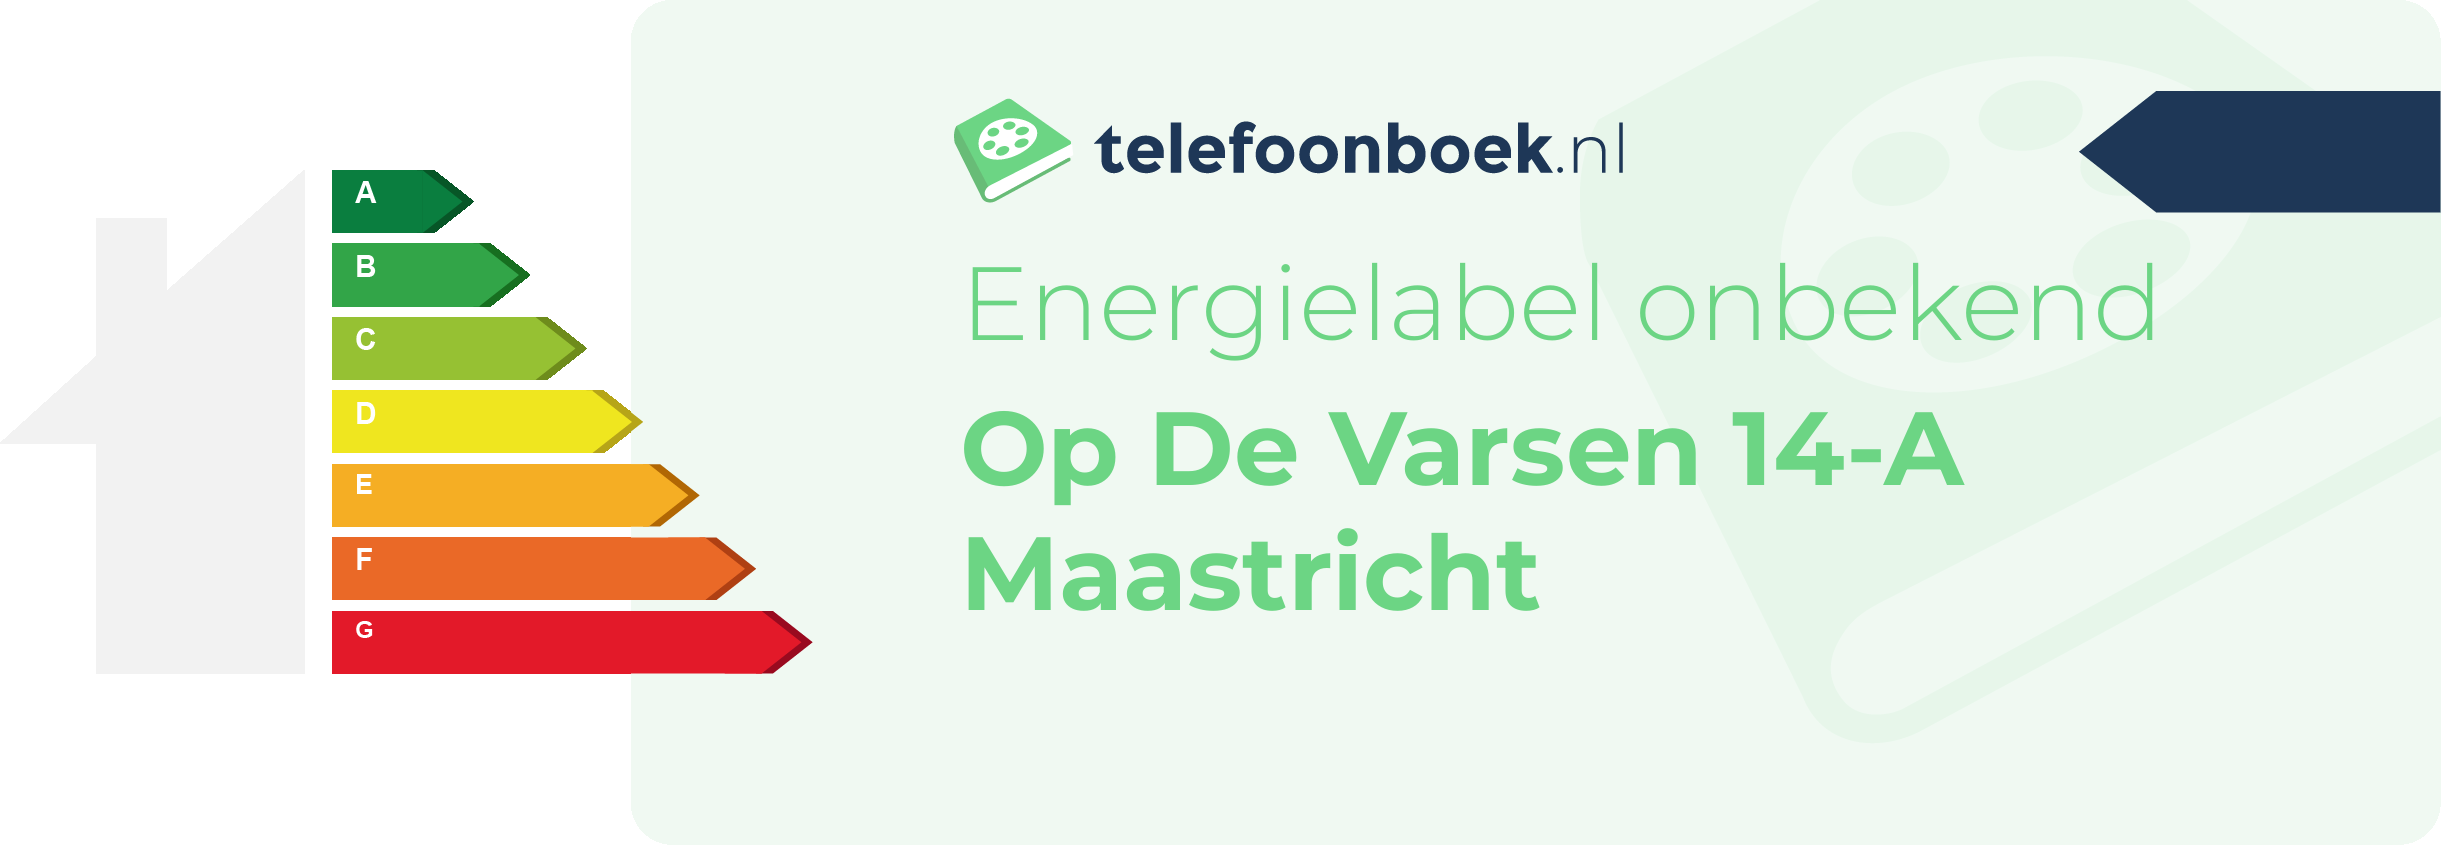 Energielabel Op De Varsen 14-A Maastricht